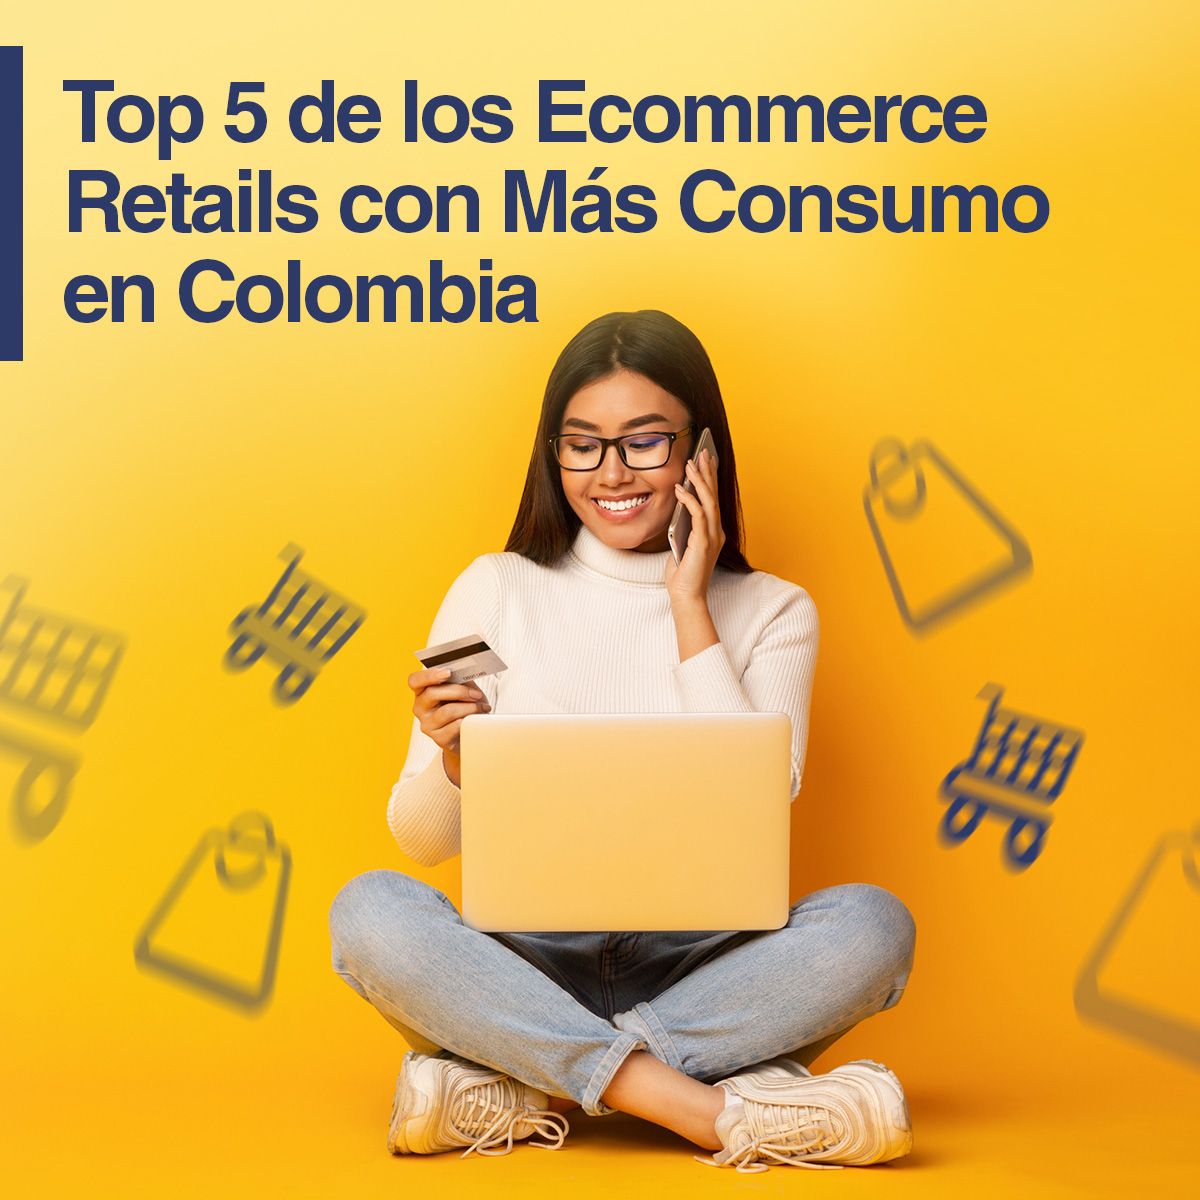 Top 5 de los Ecommerce Retails con Más Consumo en Colombia